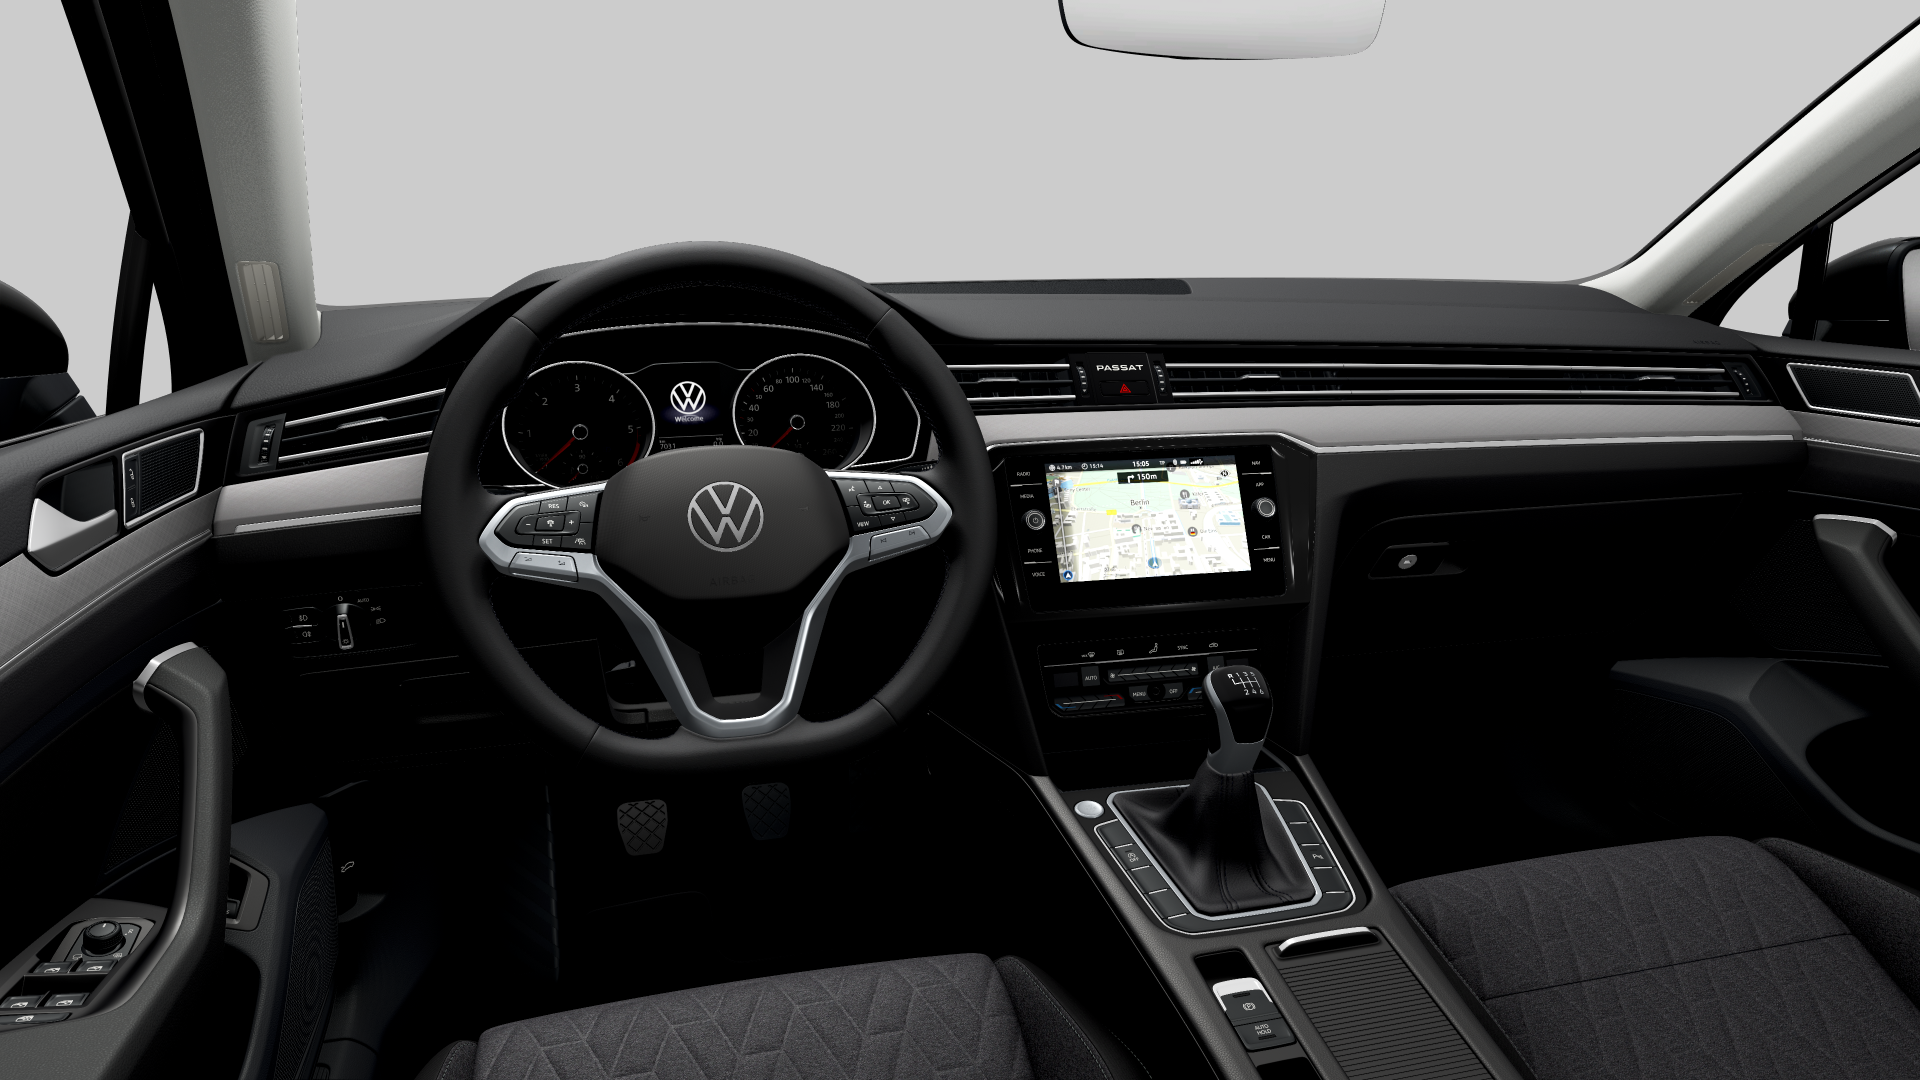 Volkswagen Passat Variant Executive 2.0 TDI 110 kW (150 CV)